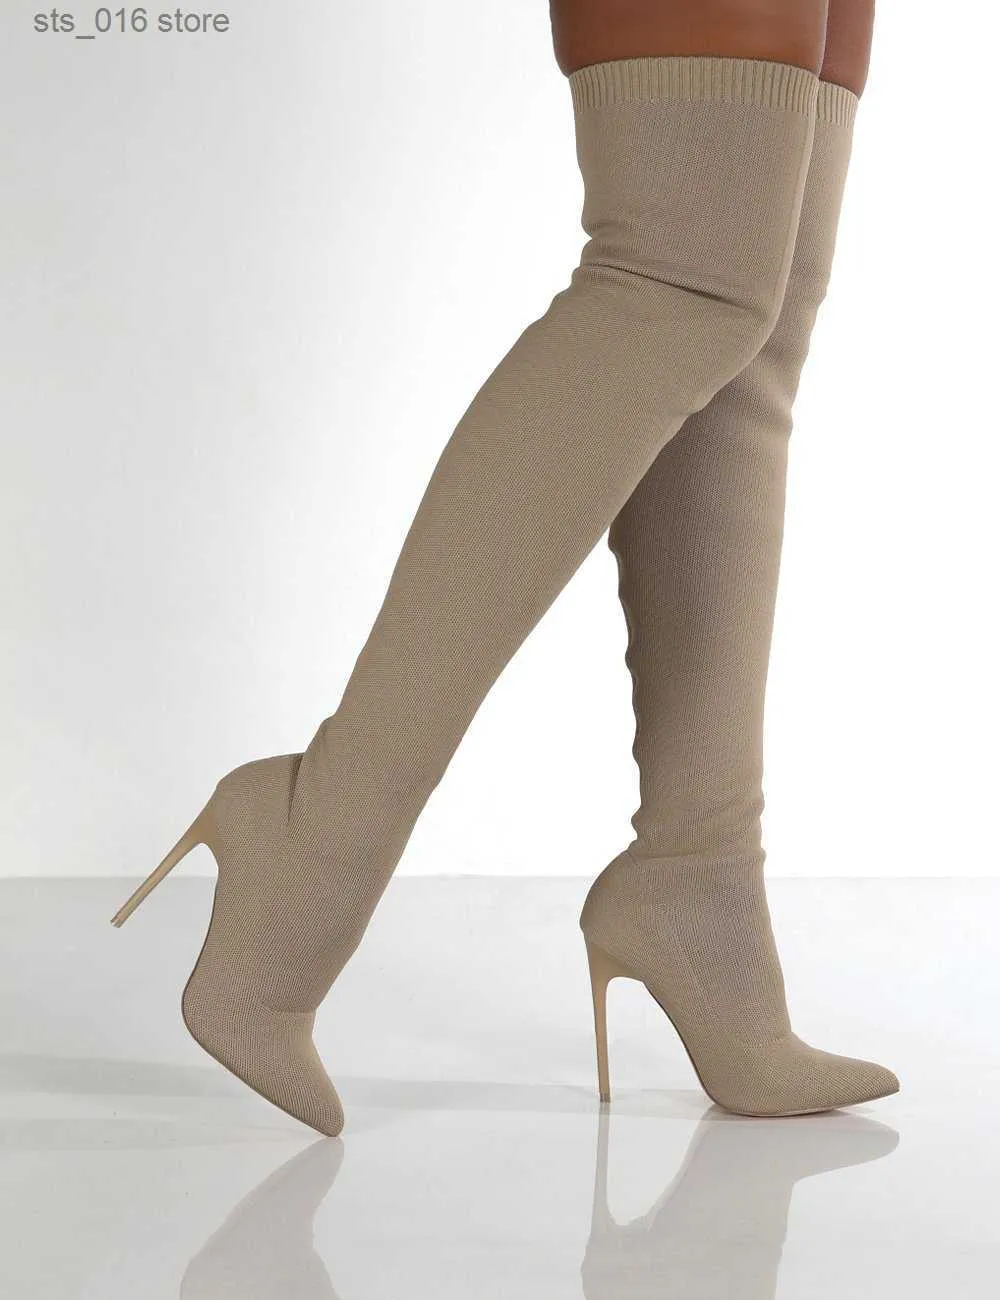 امرأة مثير الكعوب جديدة أحذية عالية الركبة الدانتيل ارتفاع الشتاء الحجم الدافئ 35-43 2021 أحذية الموضة T230824 116